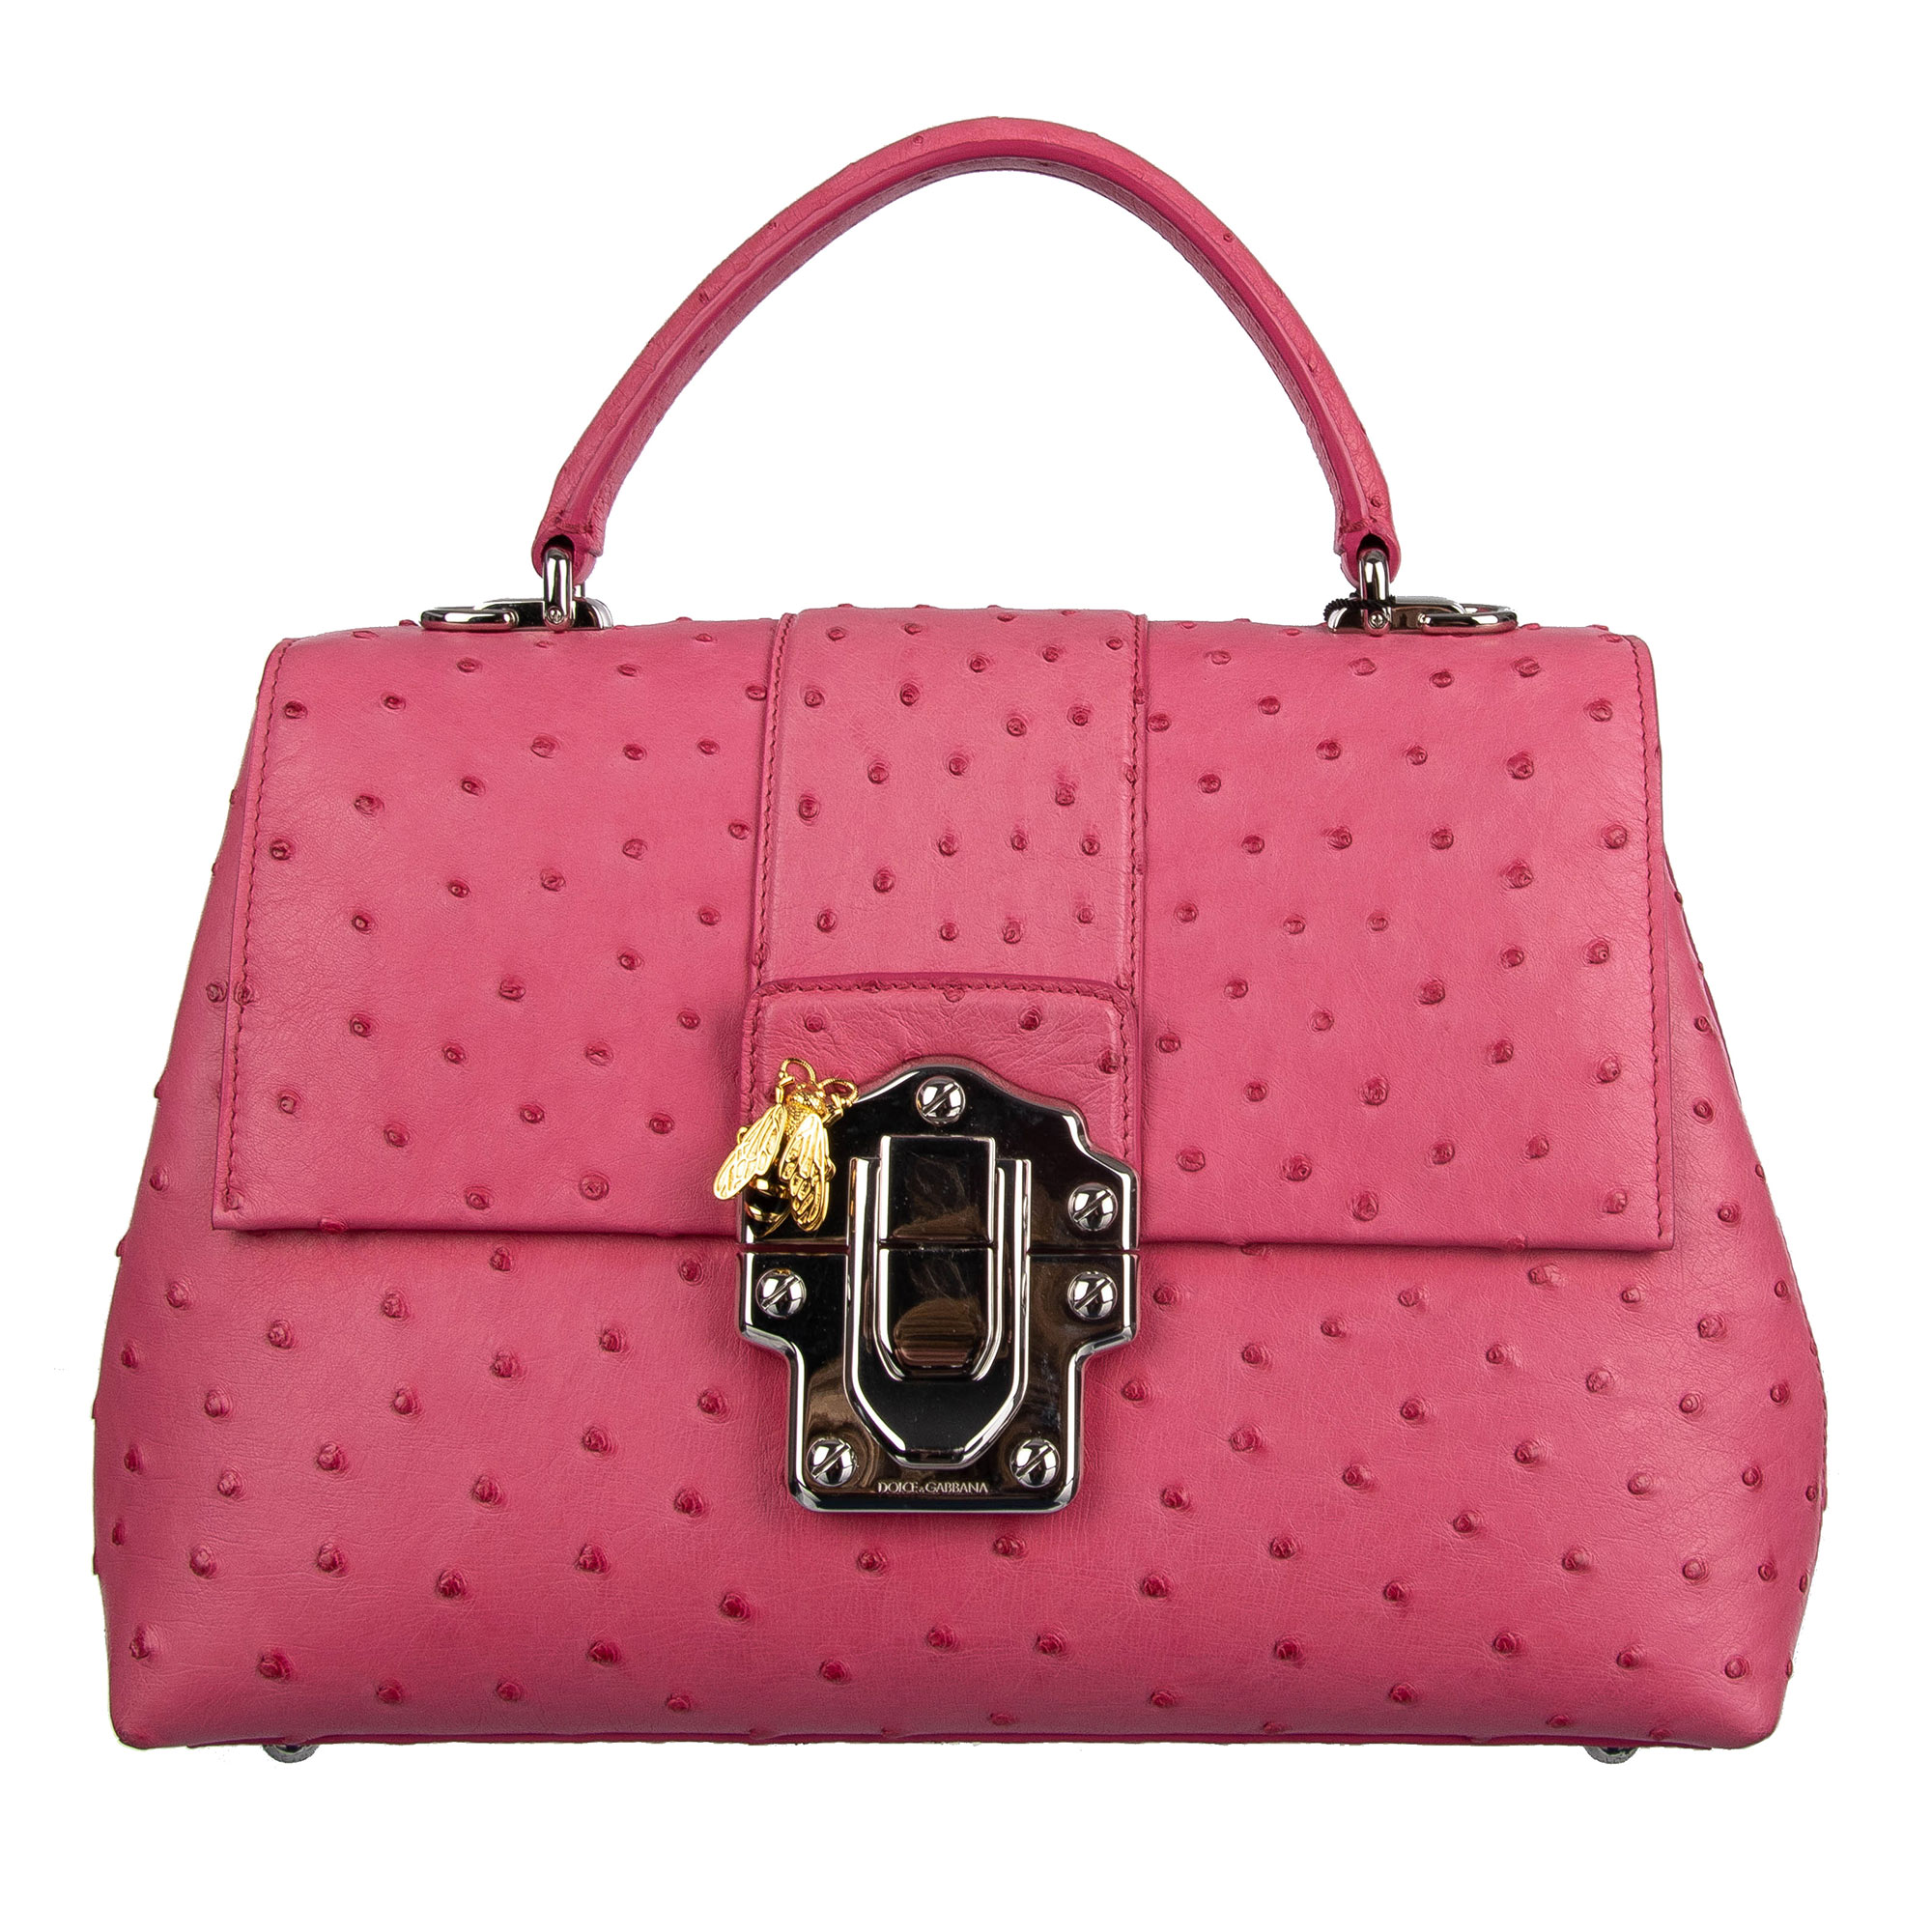 Dolce & Gabbana Tasche LUCIA aus Straussenleder Pink